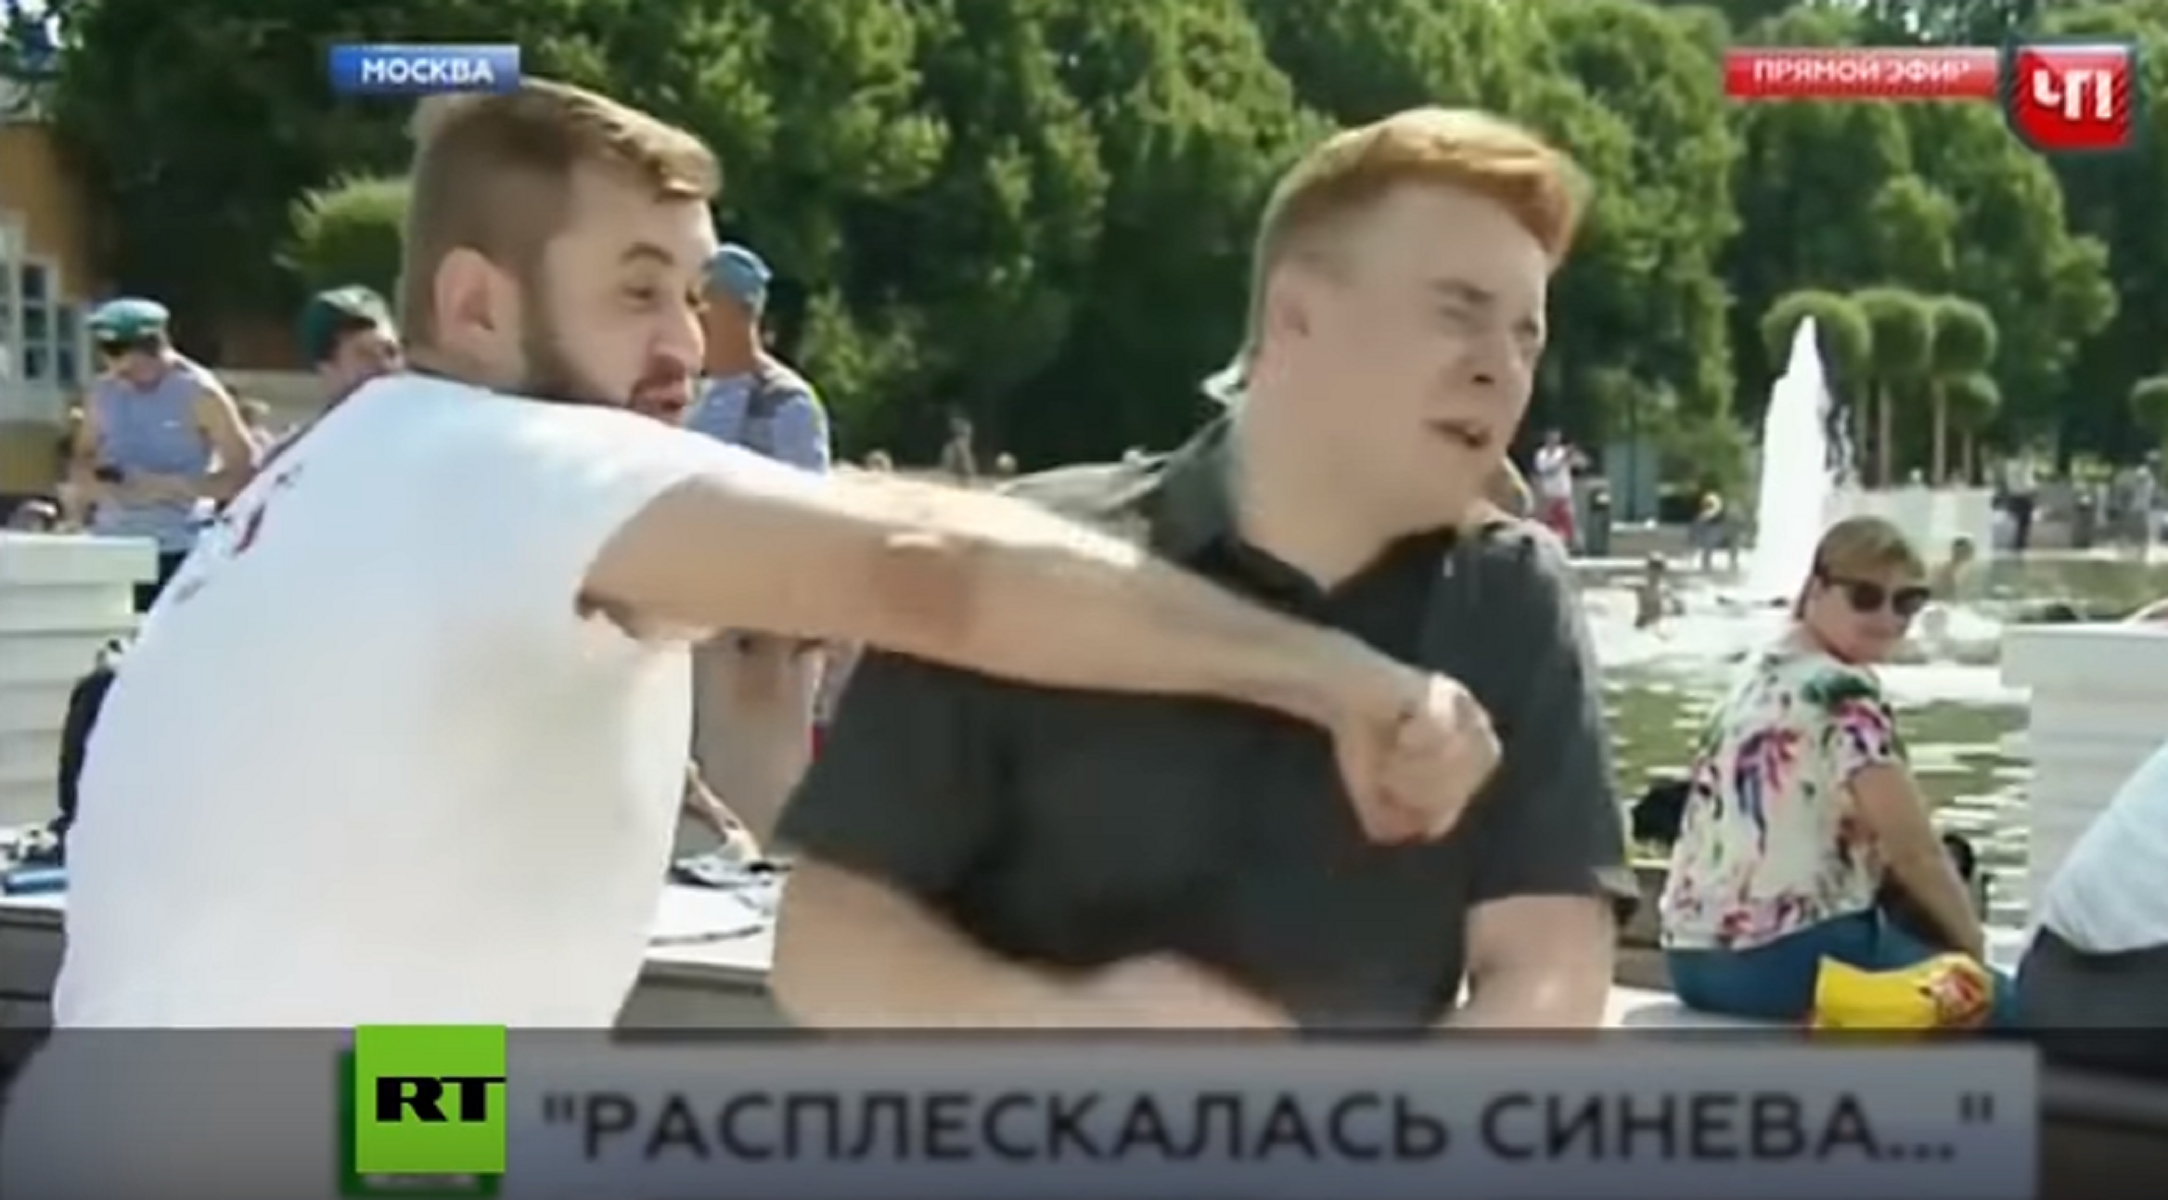 La brutal agresión a un reportero ruso en directo